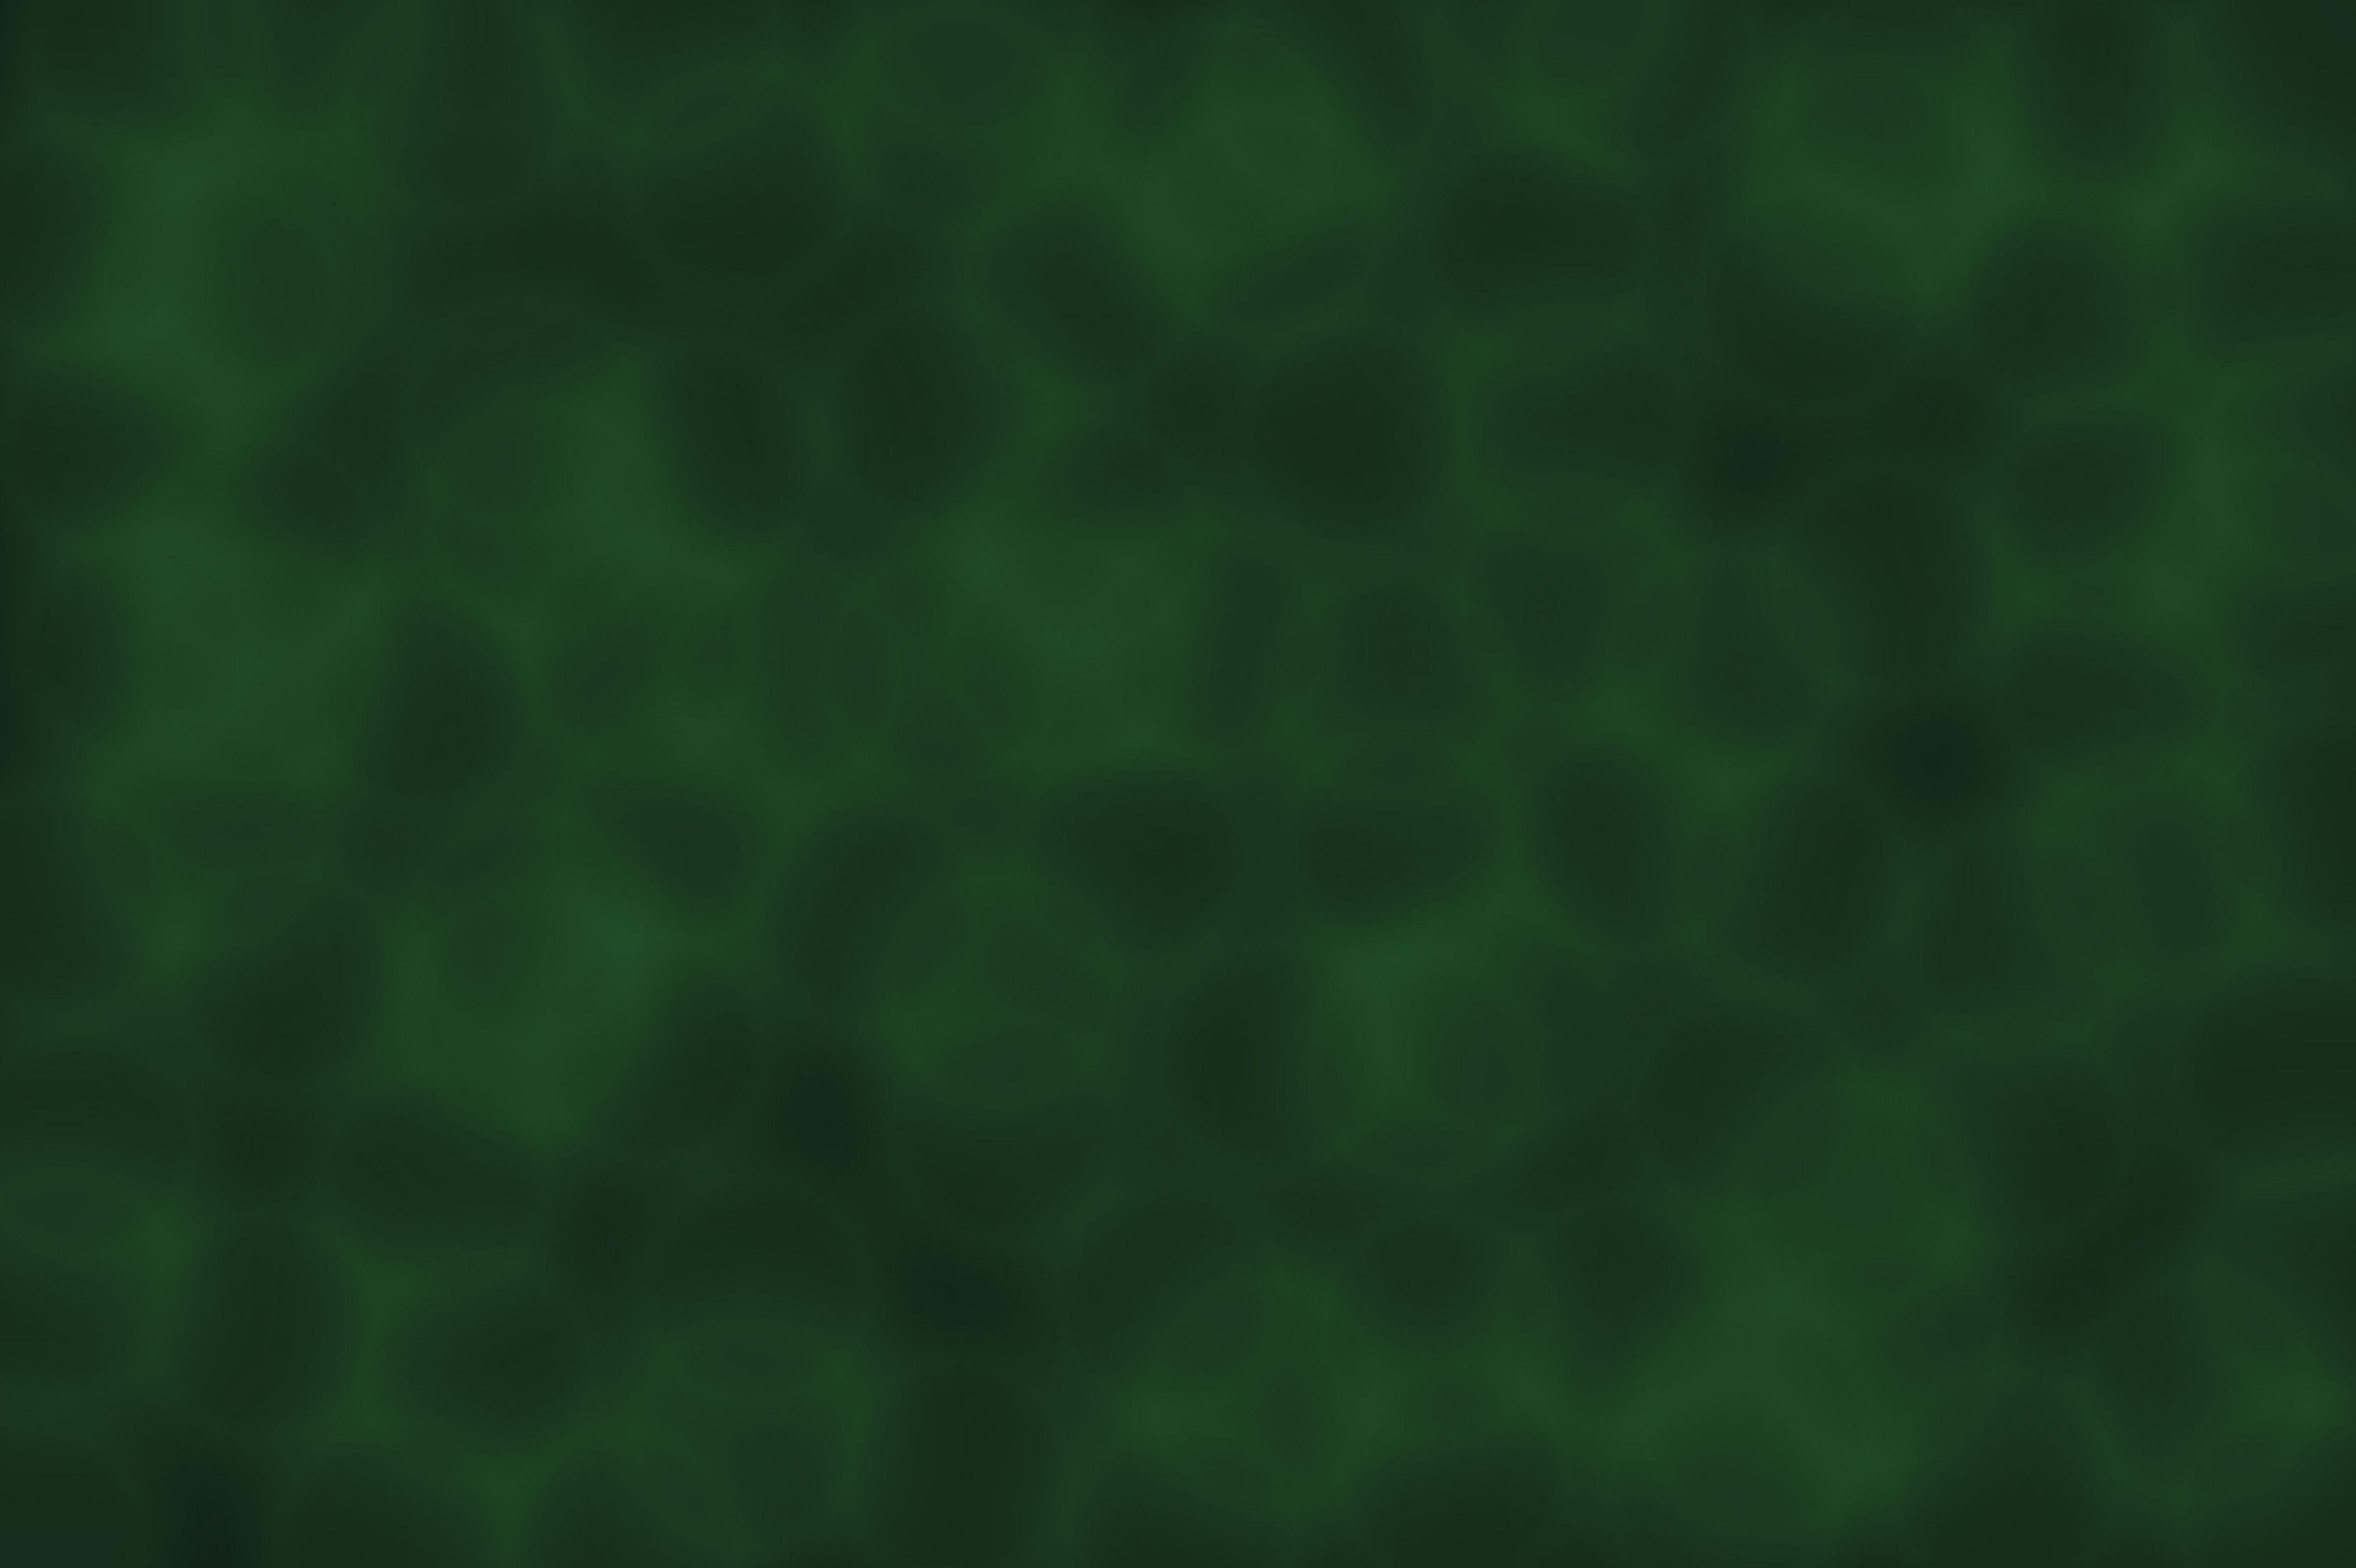 Wallpaper For > Plain Dark Green Background